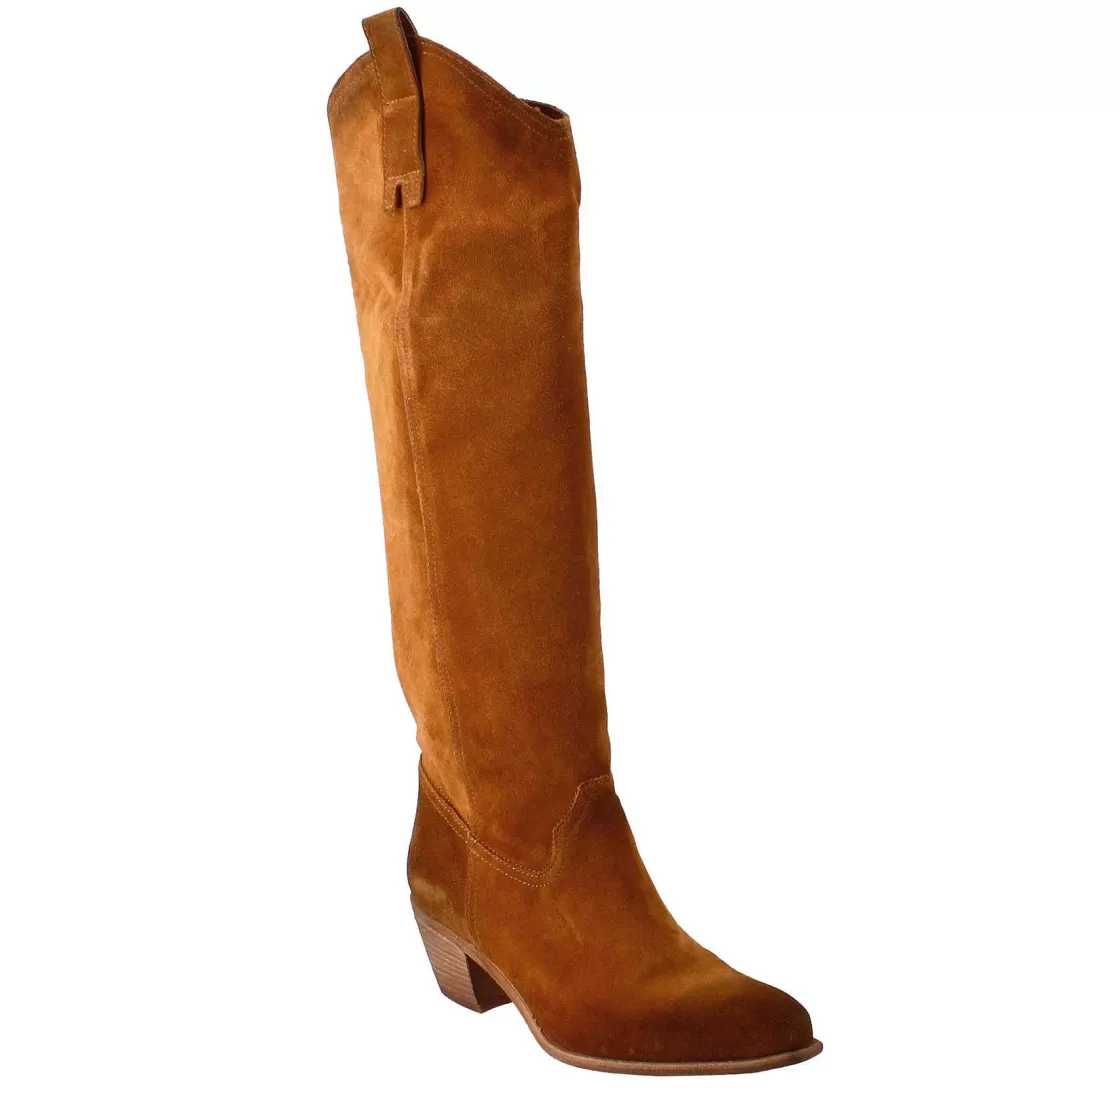 Leonardo Women'S Texan Boots Unlined In Brown Suede. Hot